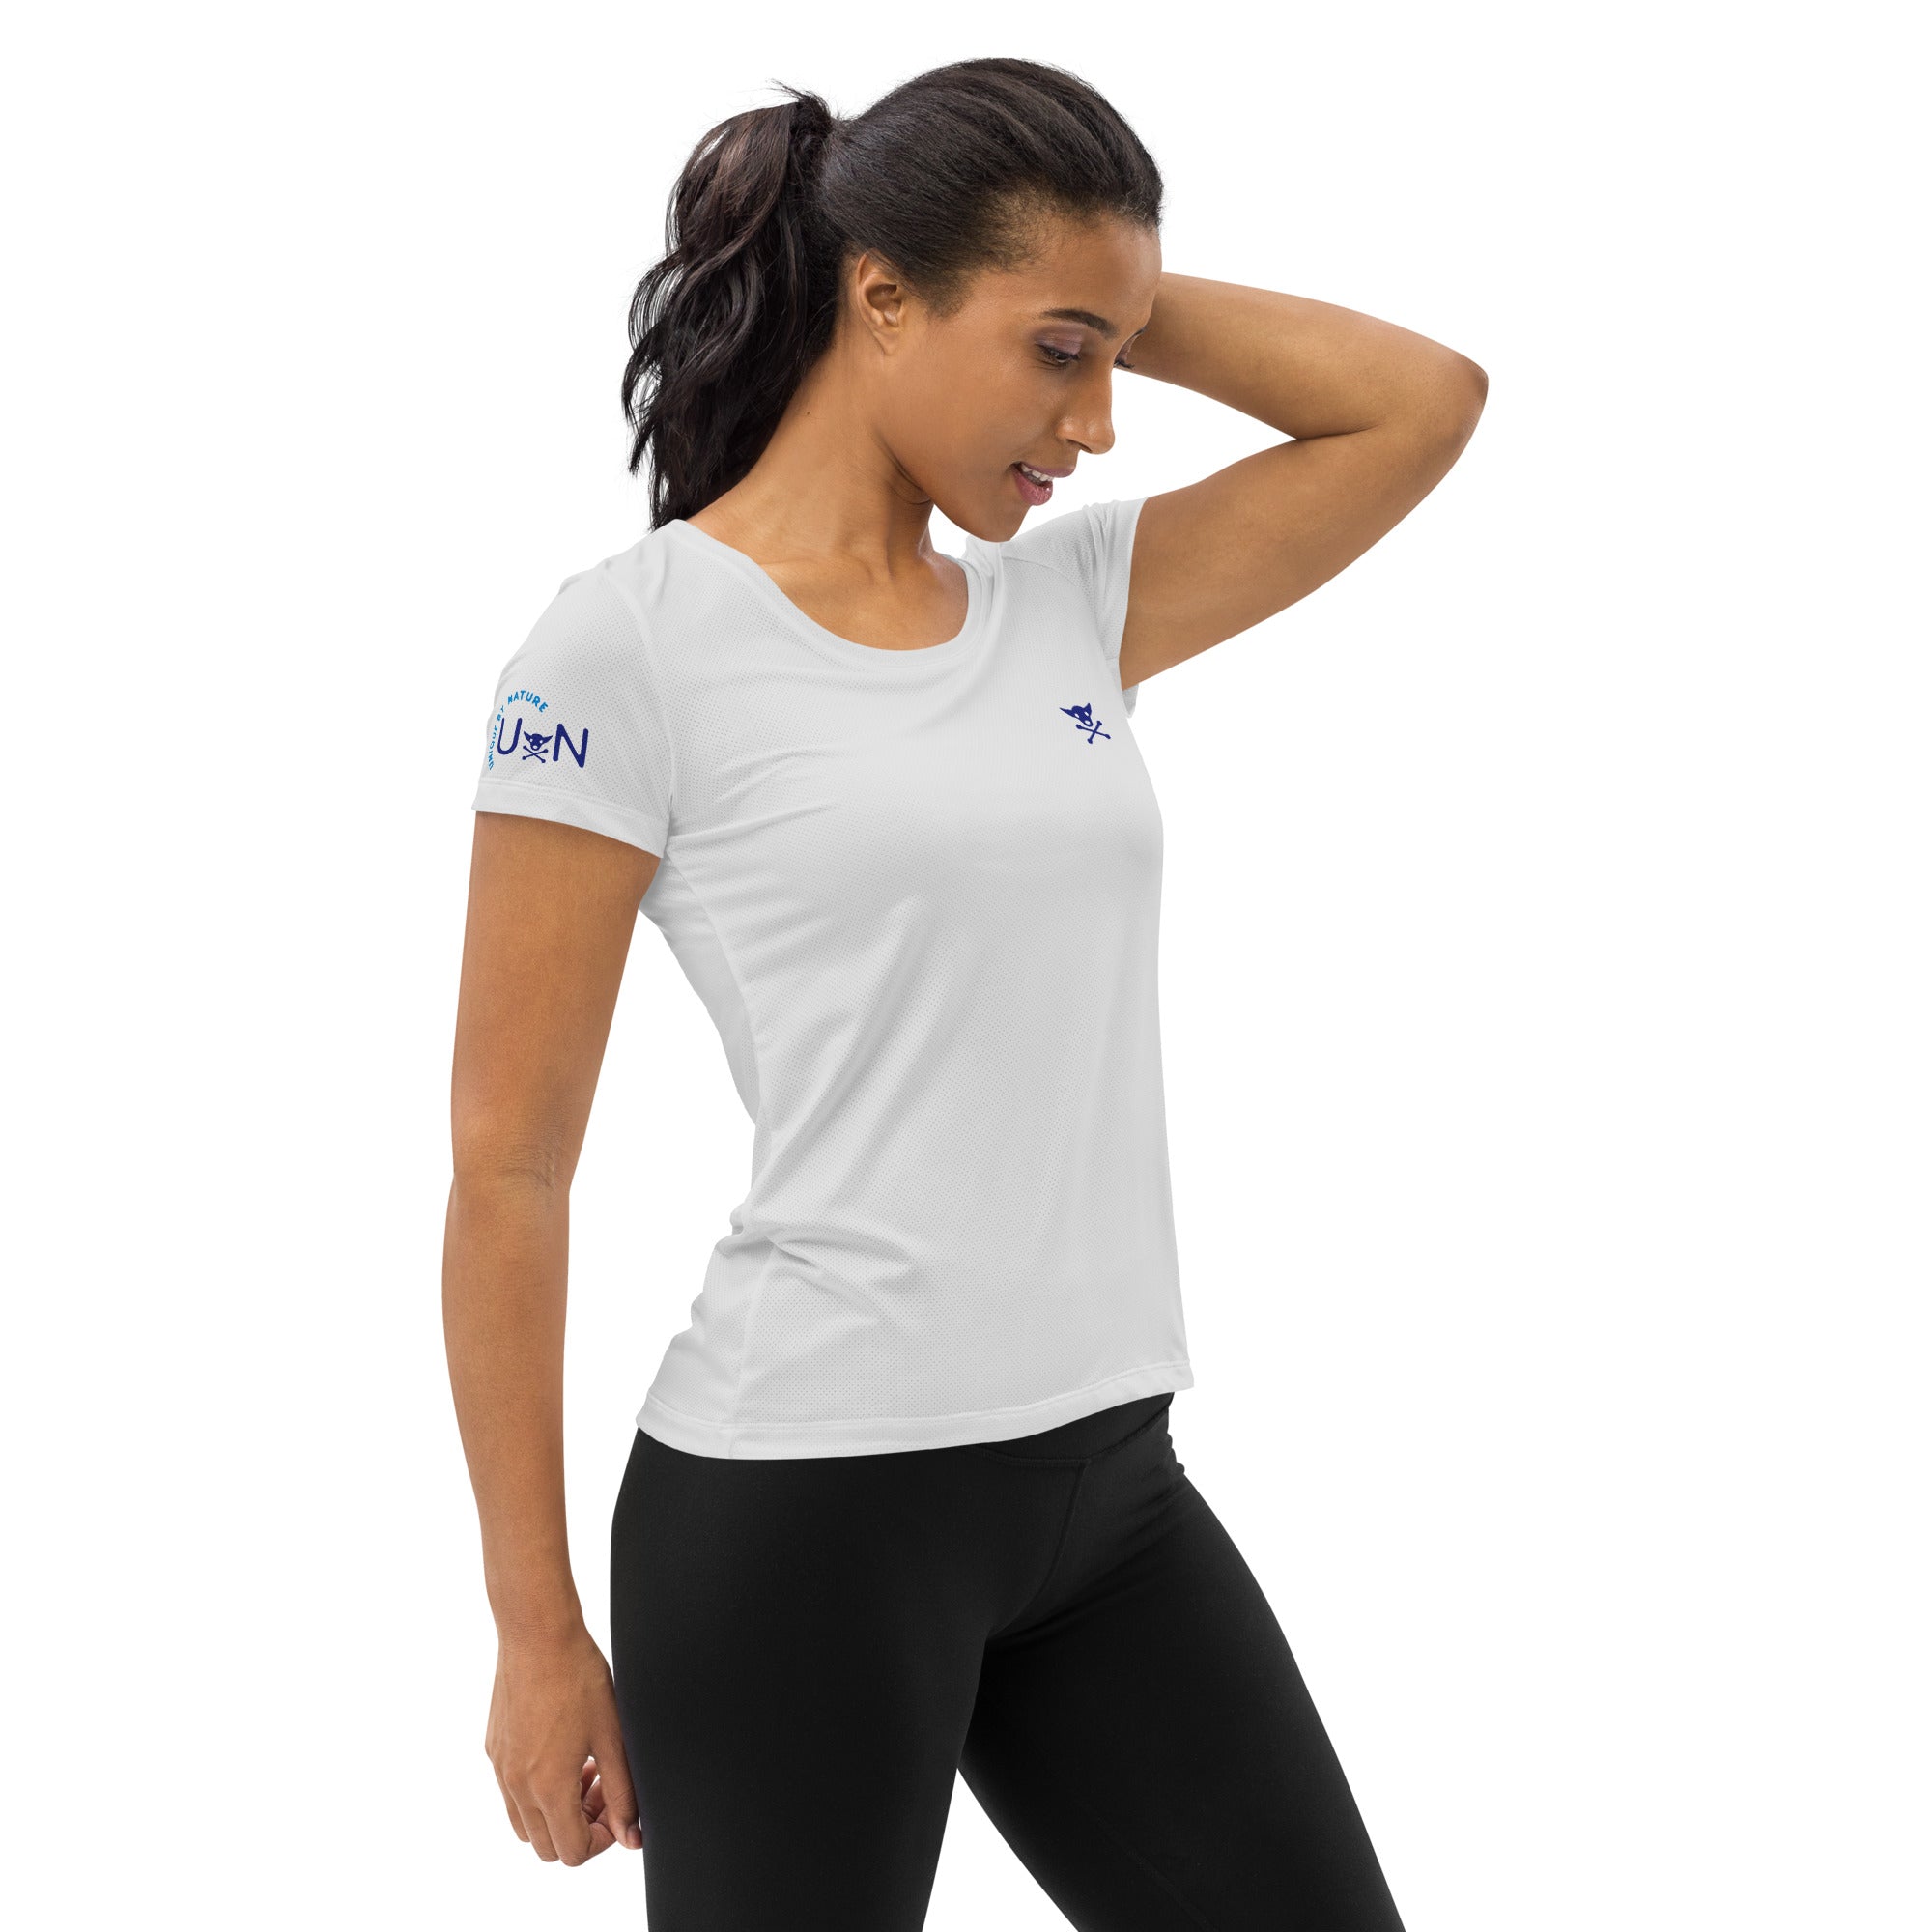 UxN 'Whisper' Women's Athletic T-shirt